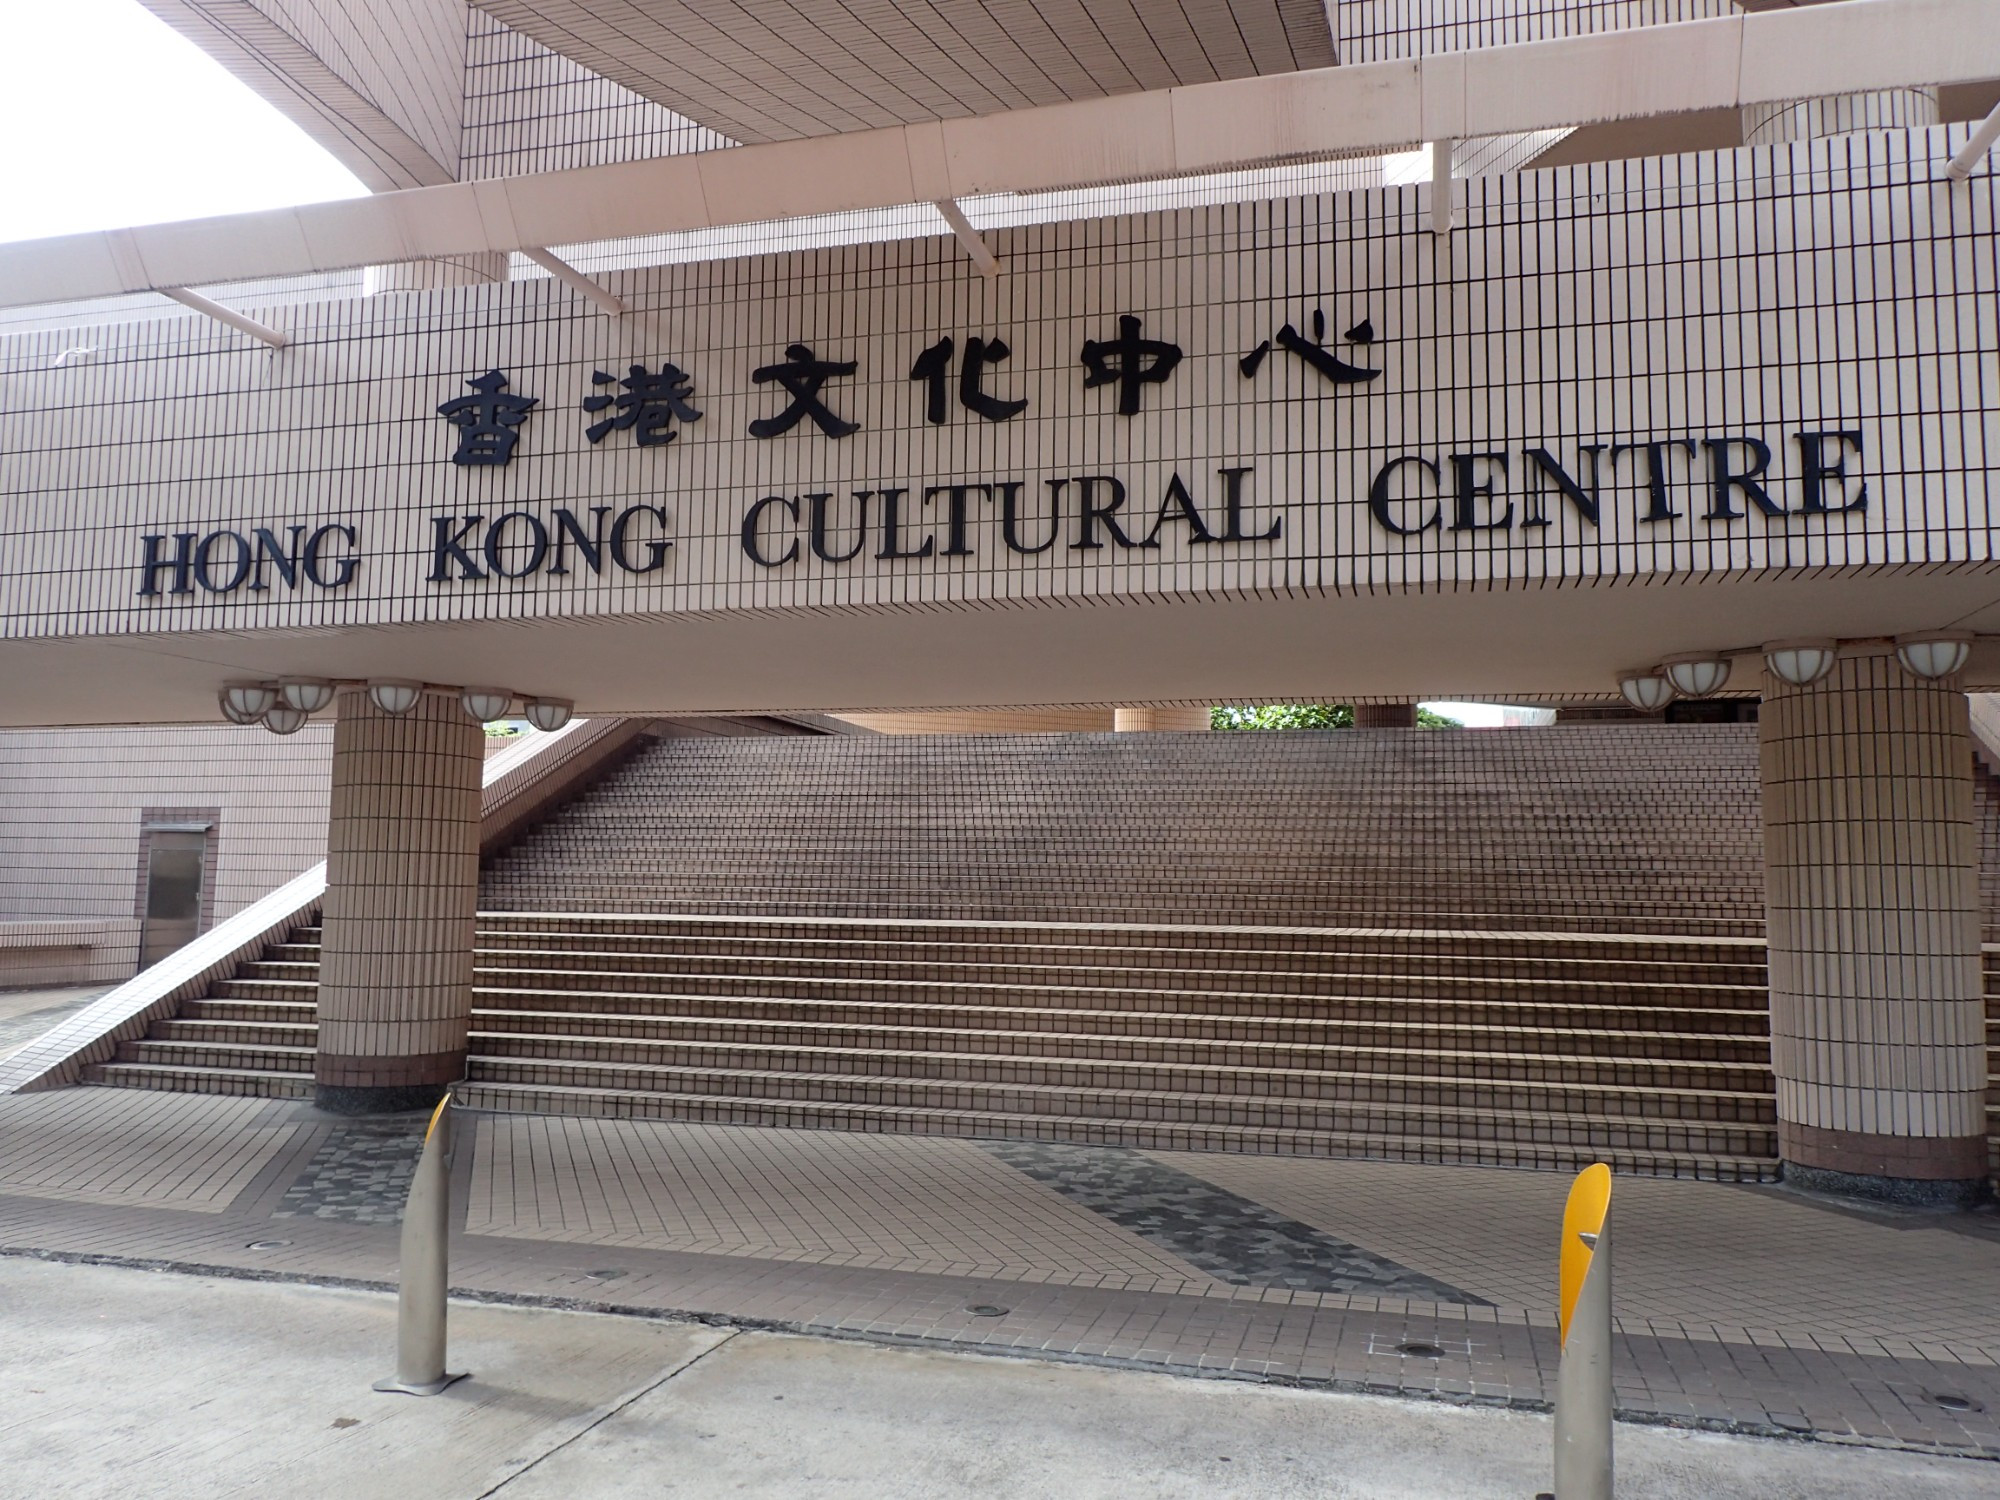 Hong Kong Cultural Centre, Hong Kong